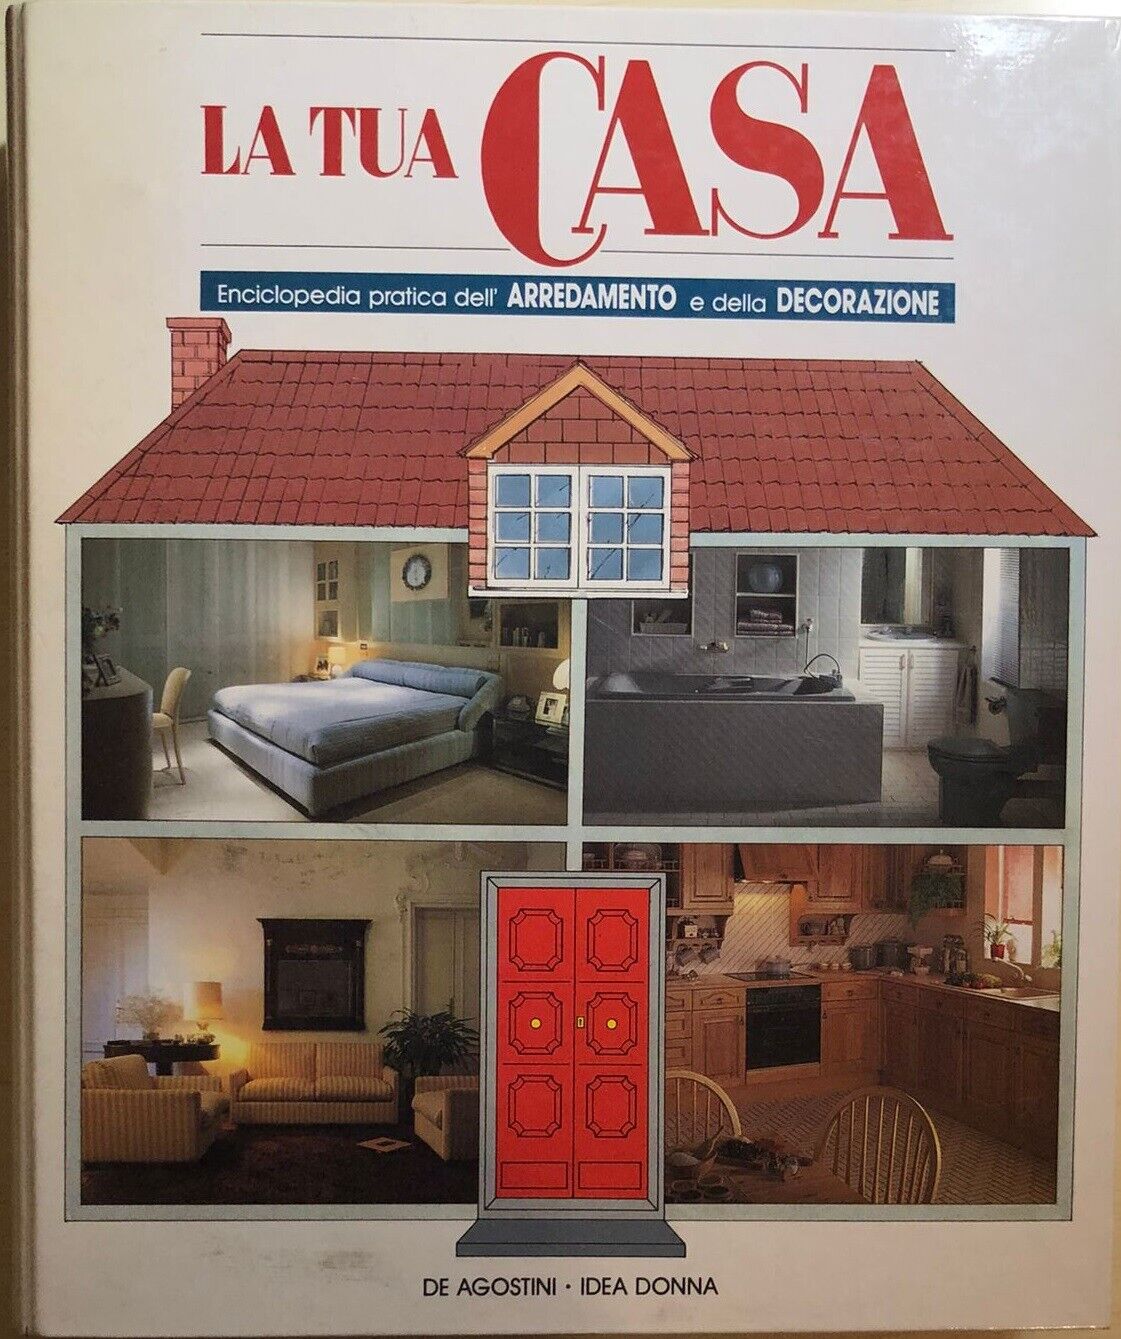 La tua casa 1-21+Prefazione+Progetto casa di Aa.vv., 1987, De Agostini-idea Donn